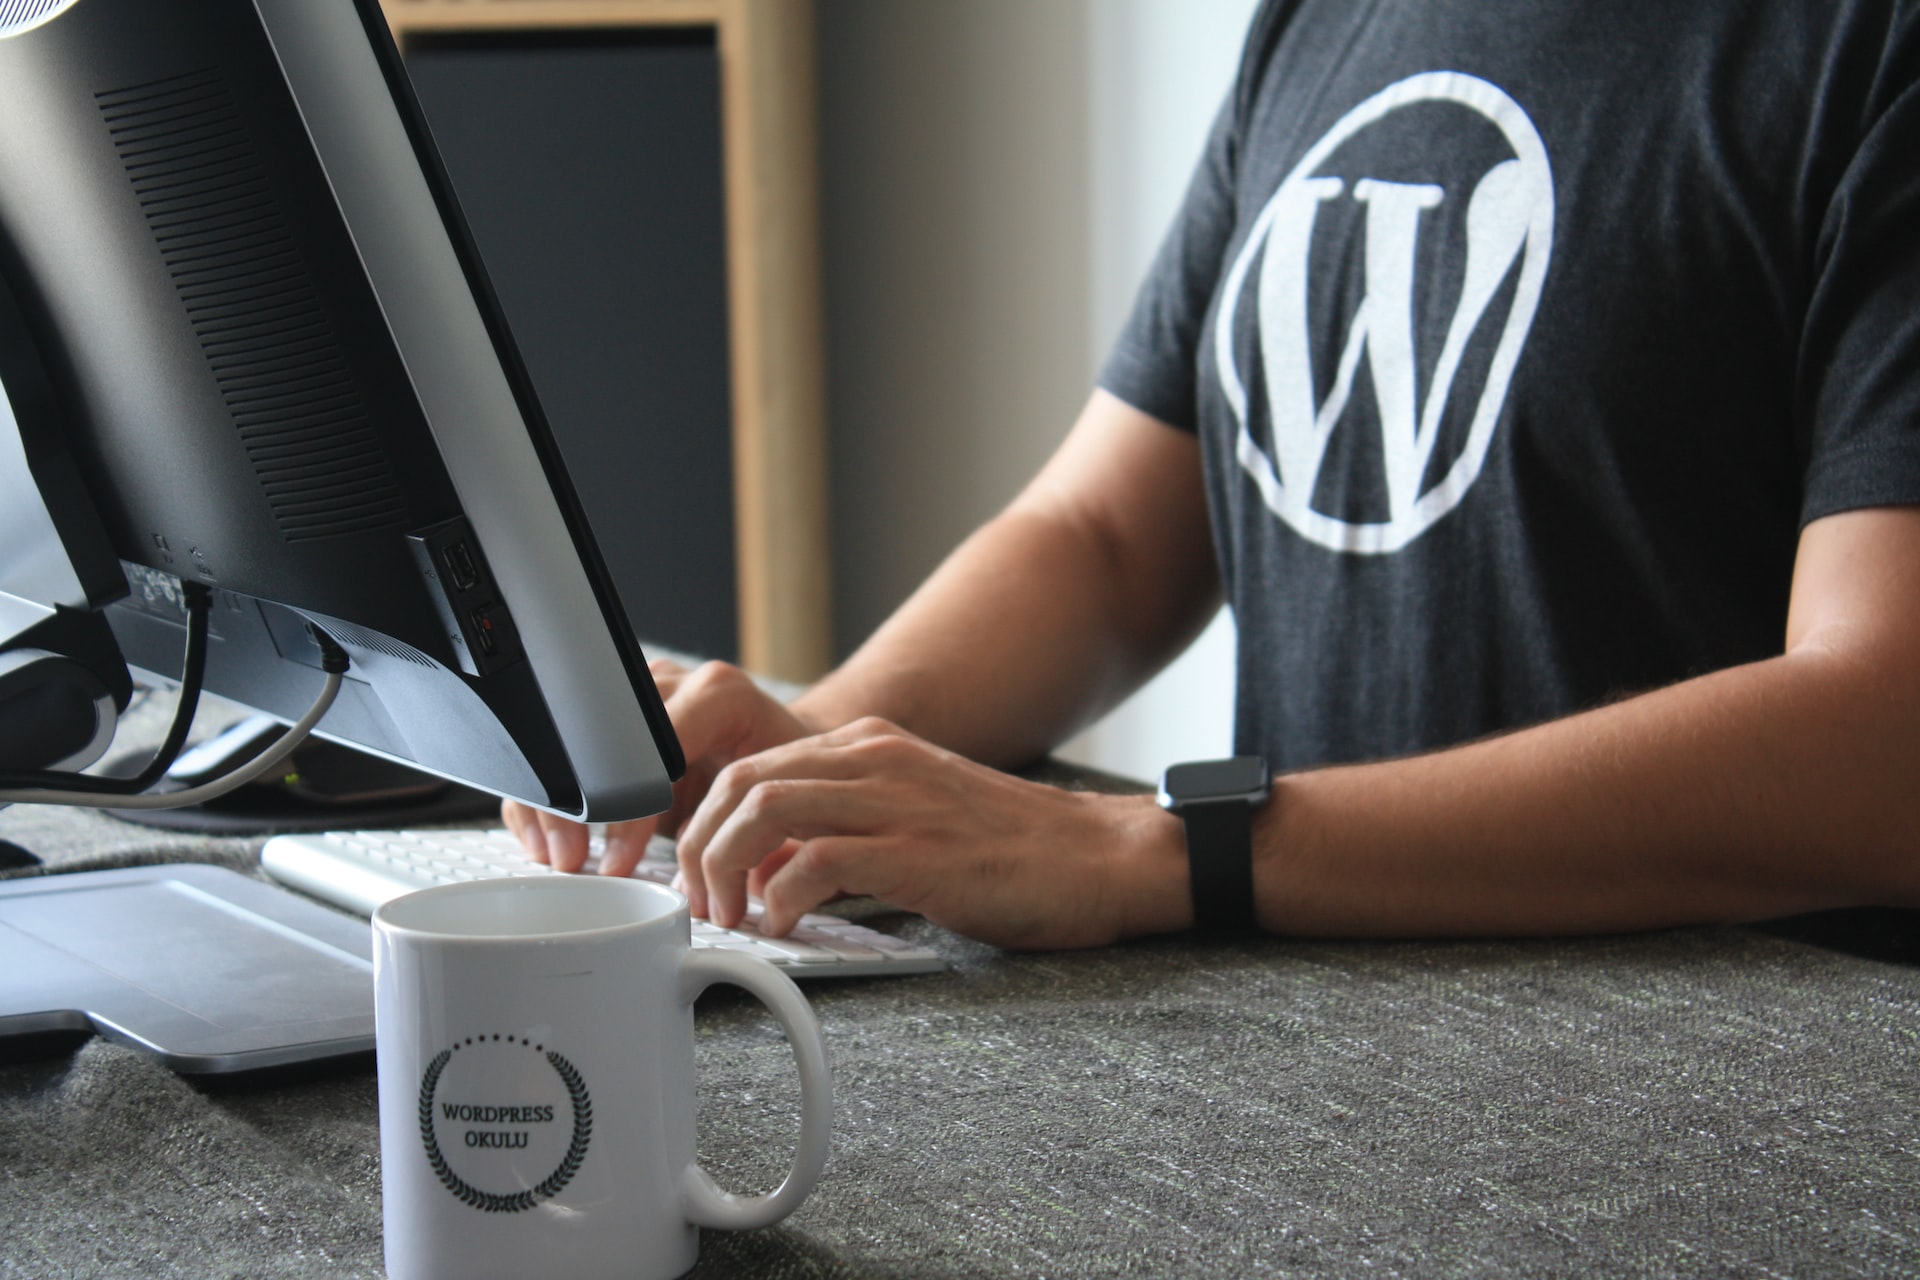 Master of WordPress – 4 Weeks